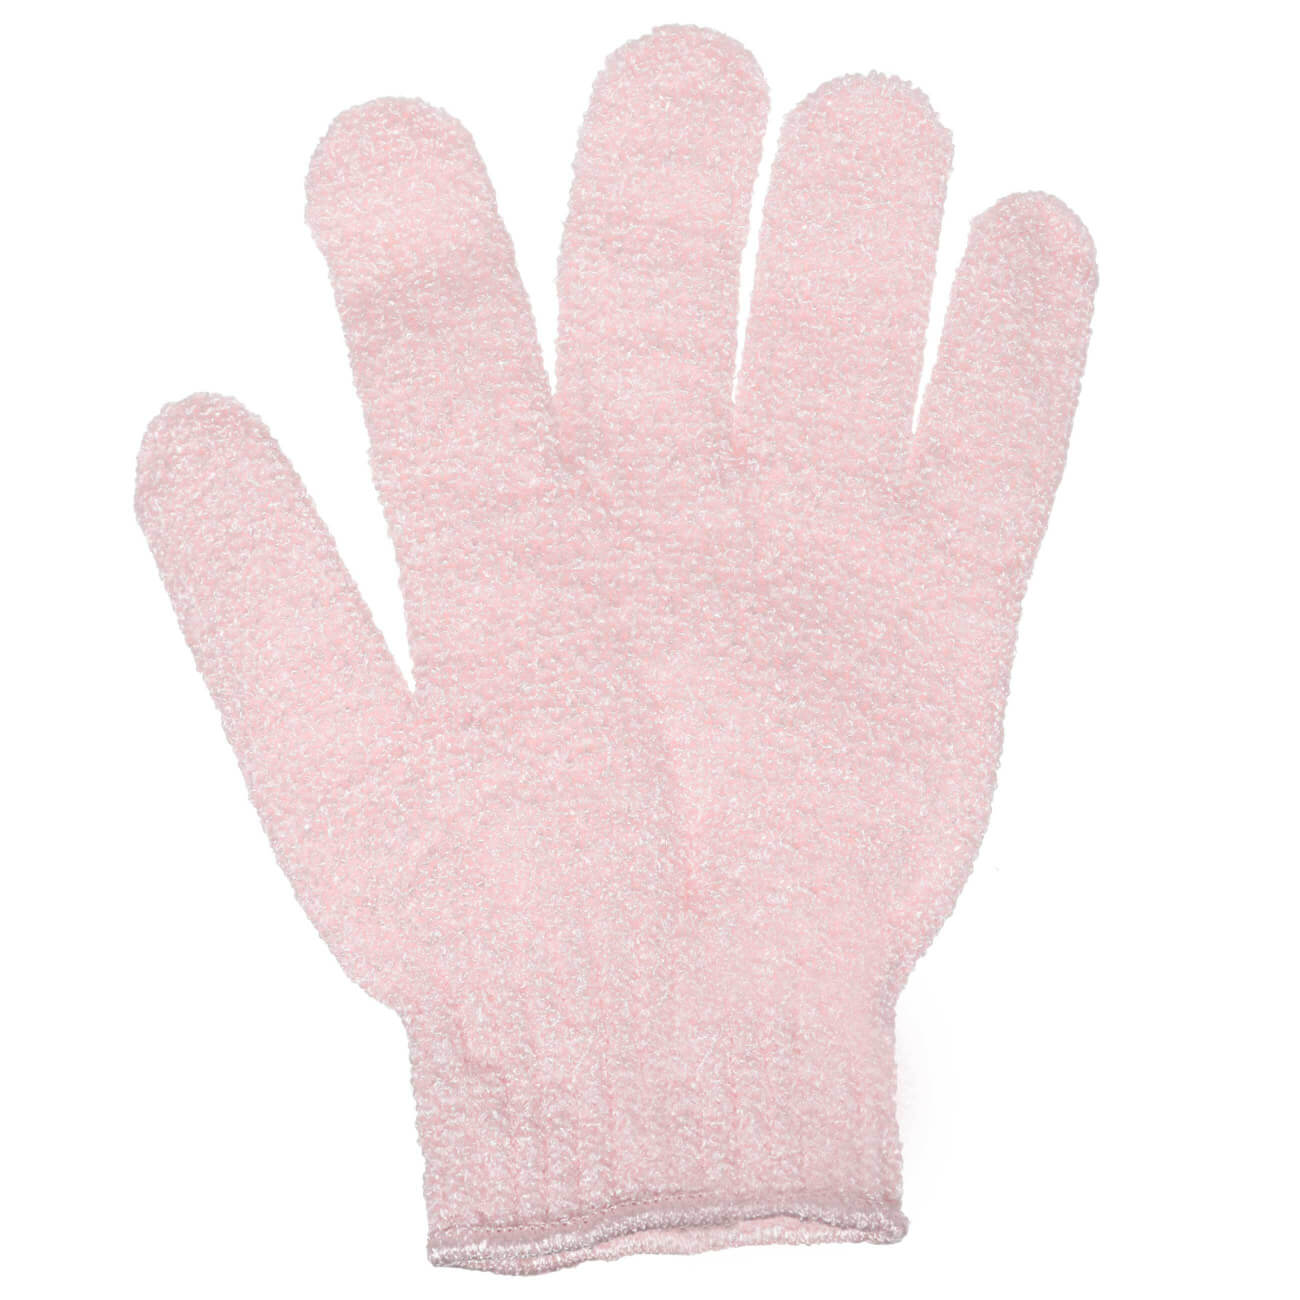 Перчатка для мытья тела, 20 см, 2 шт, отшелушивающая, нейлон, пудровая, Glamor мочалка перчатка рыжий кот